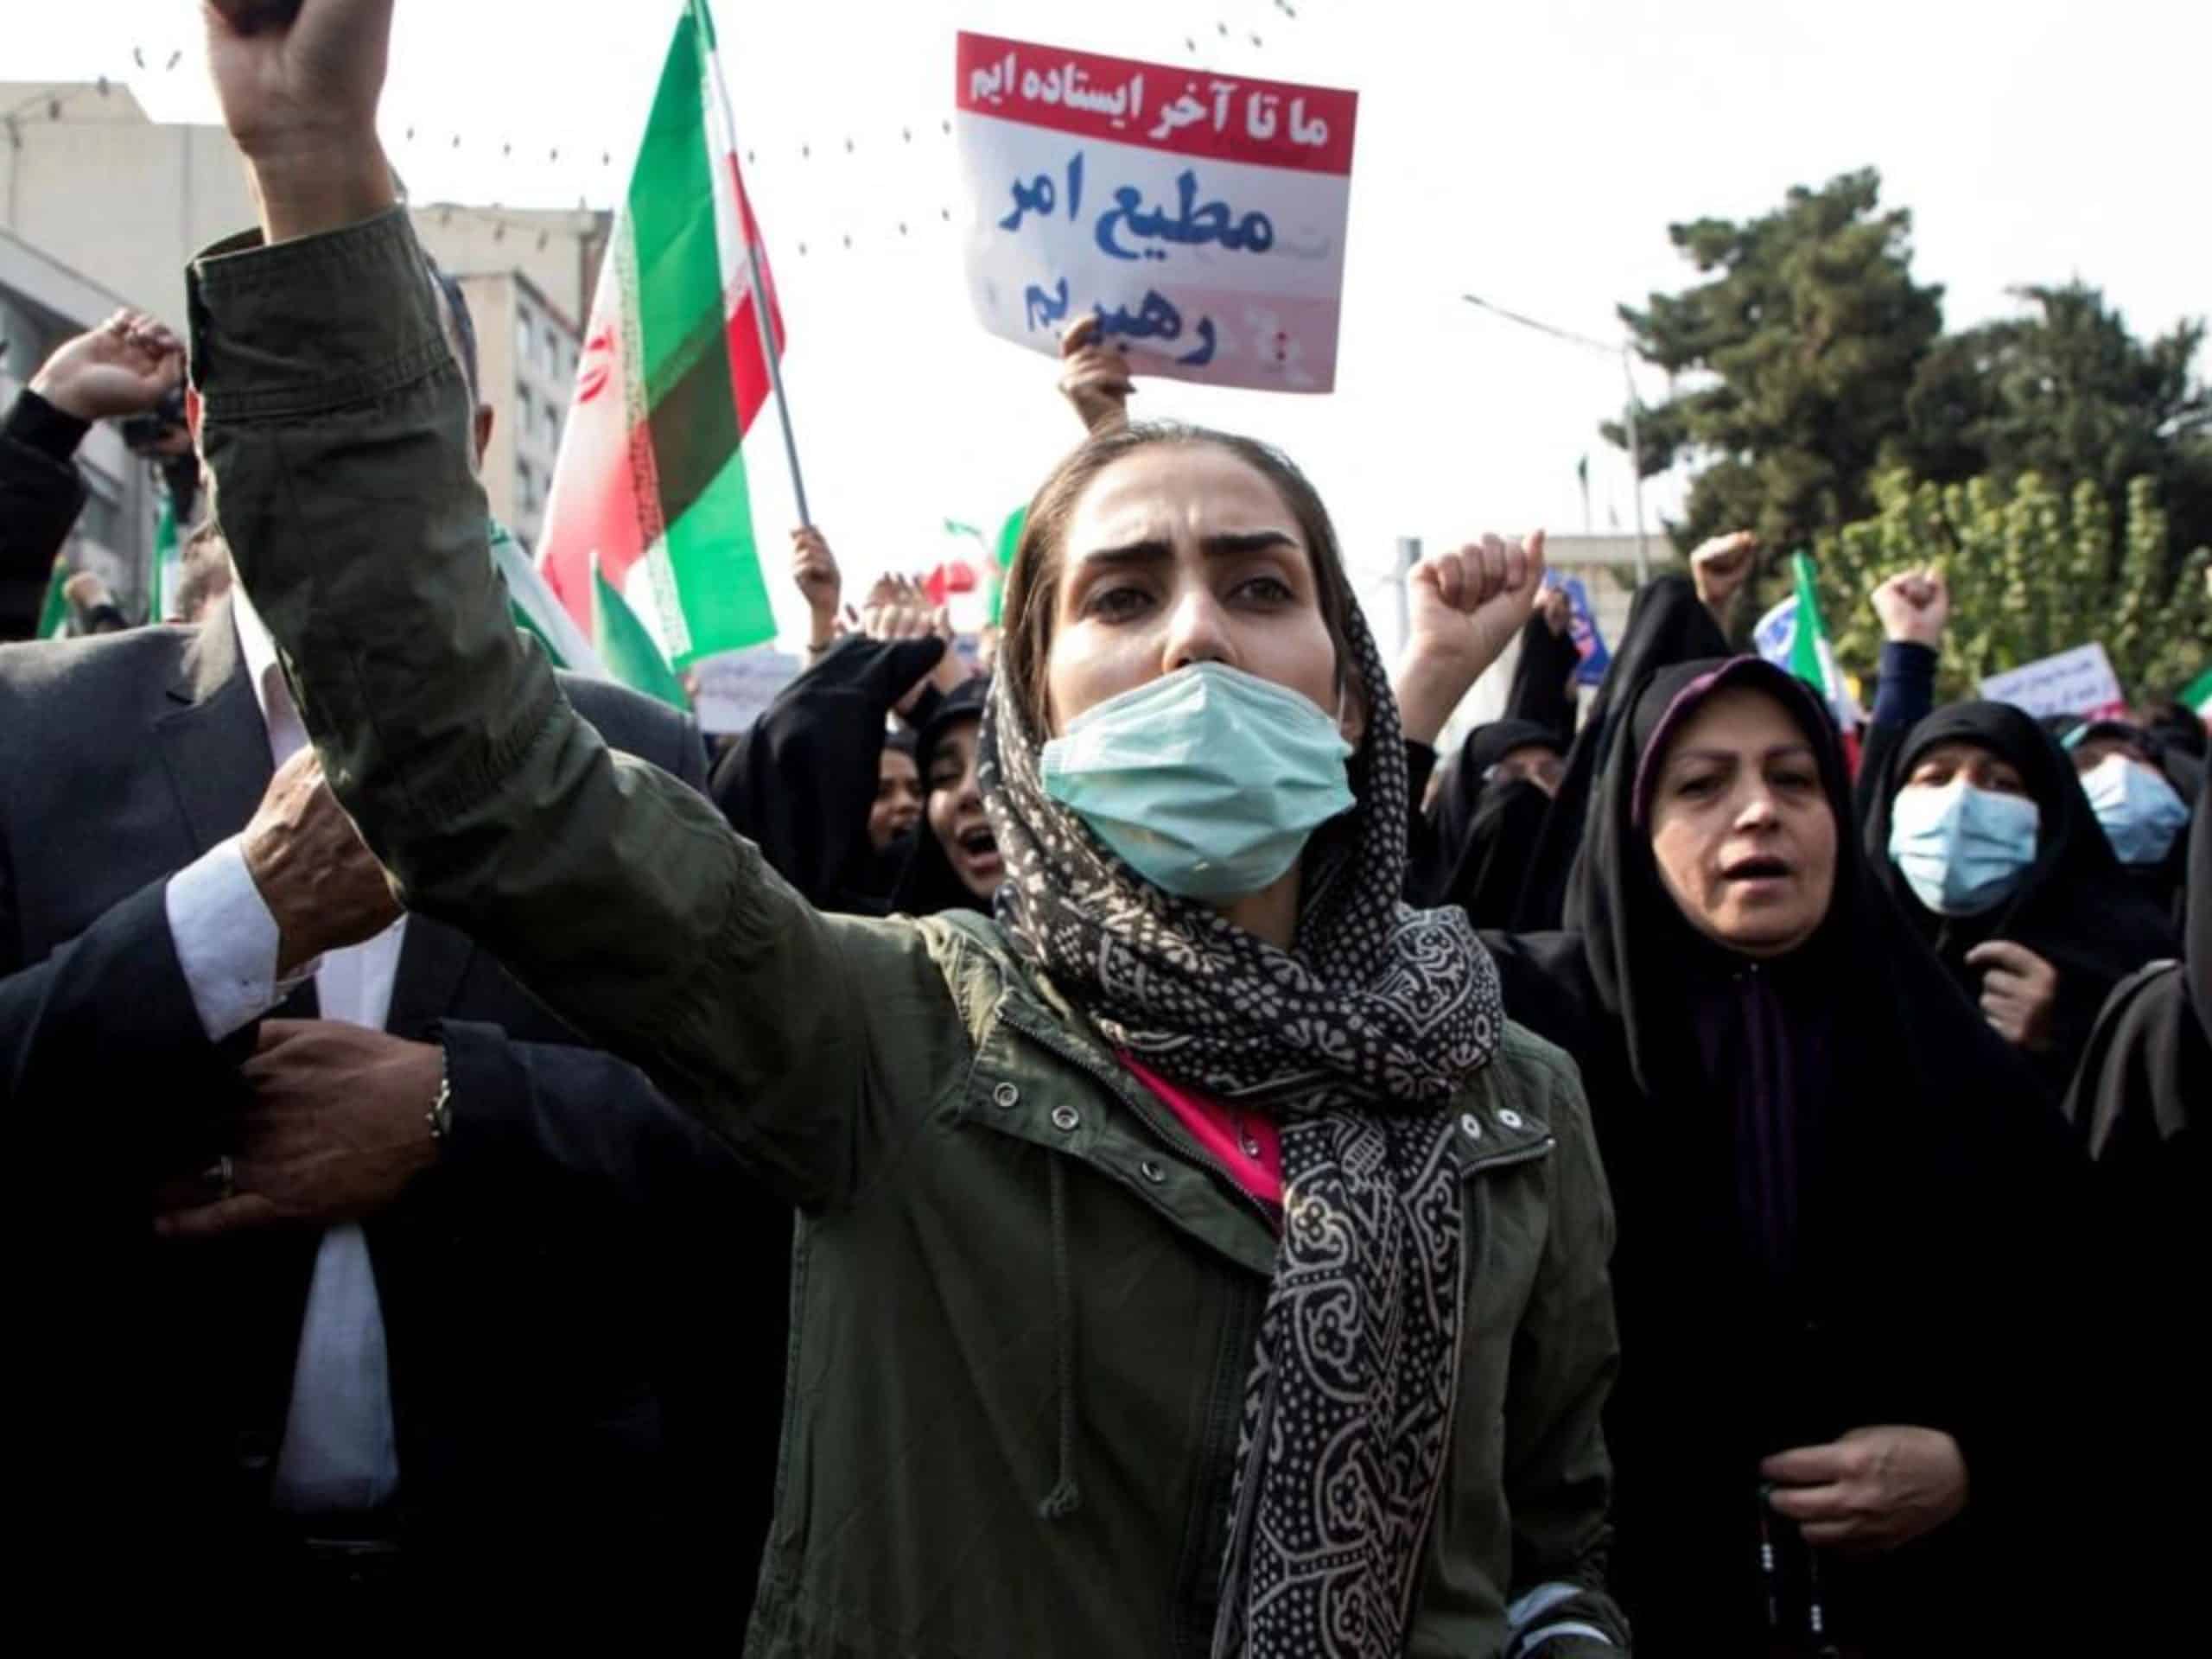 Manif en Iran : Trois autres personnes condamnées à mort